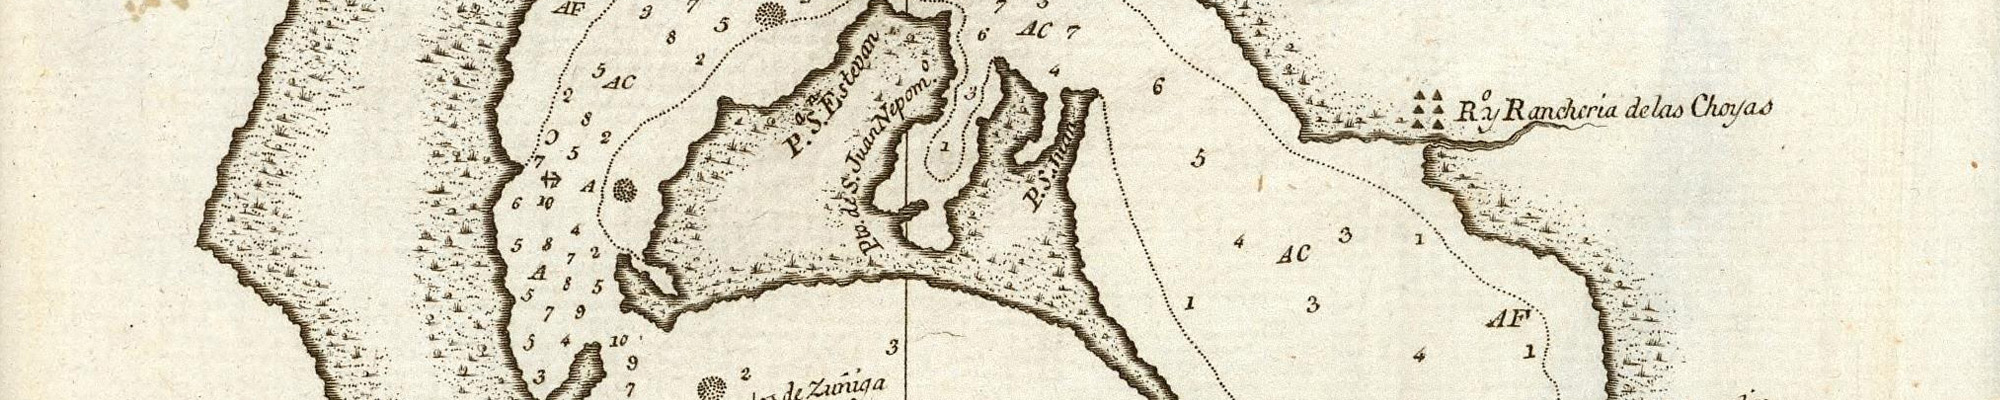 historic map 1802 Plano del Puerto de San Diego